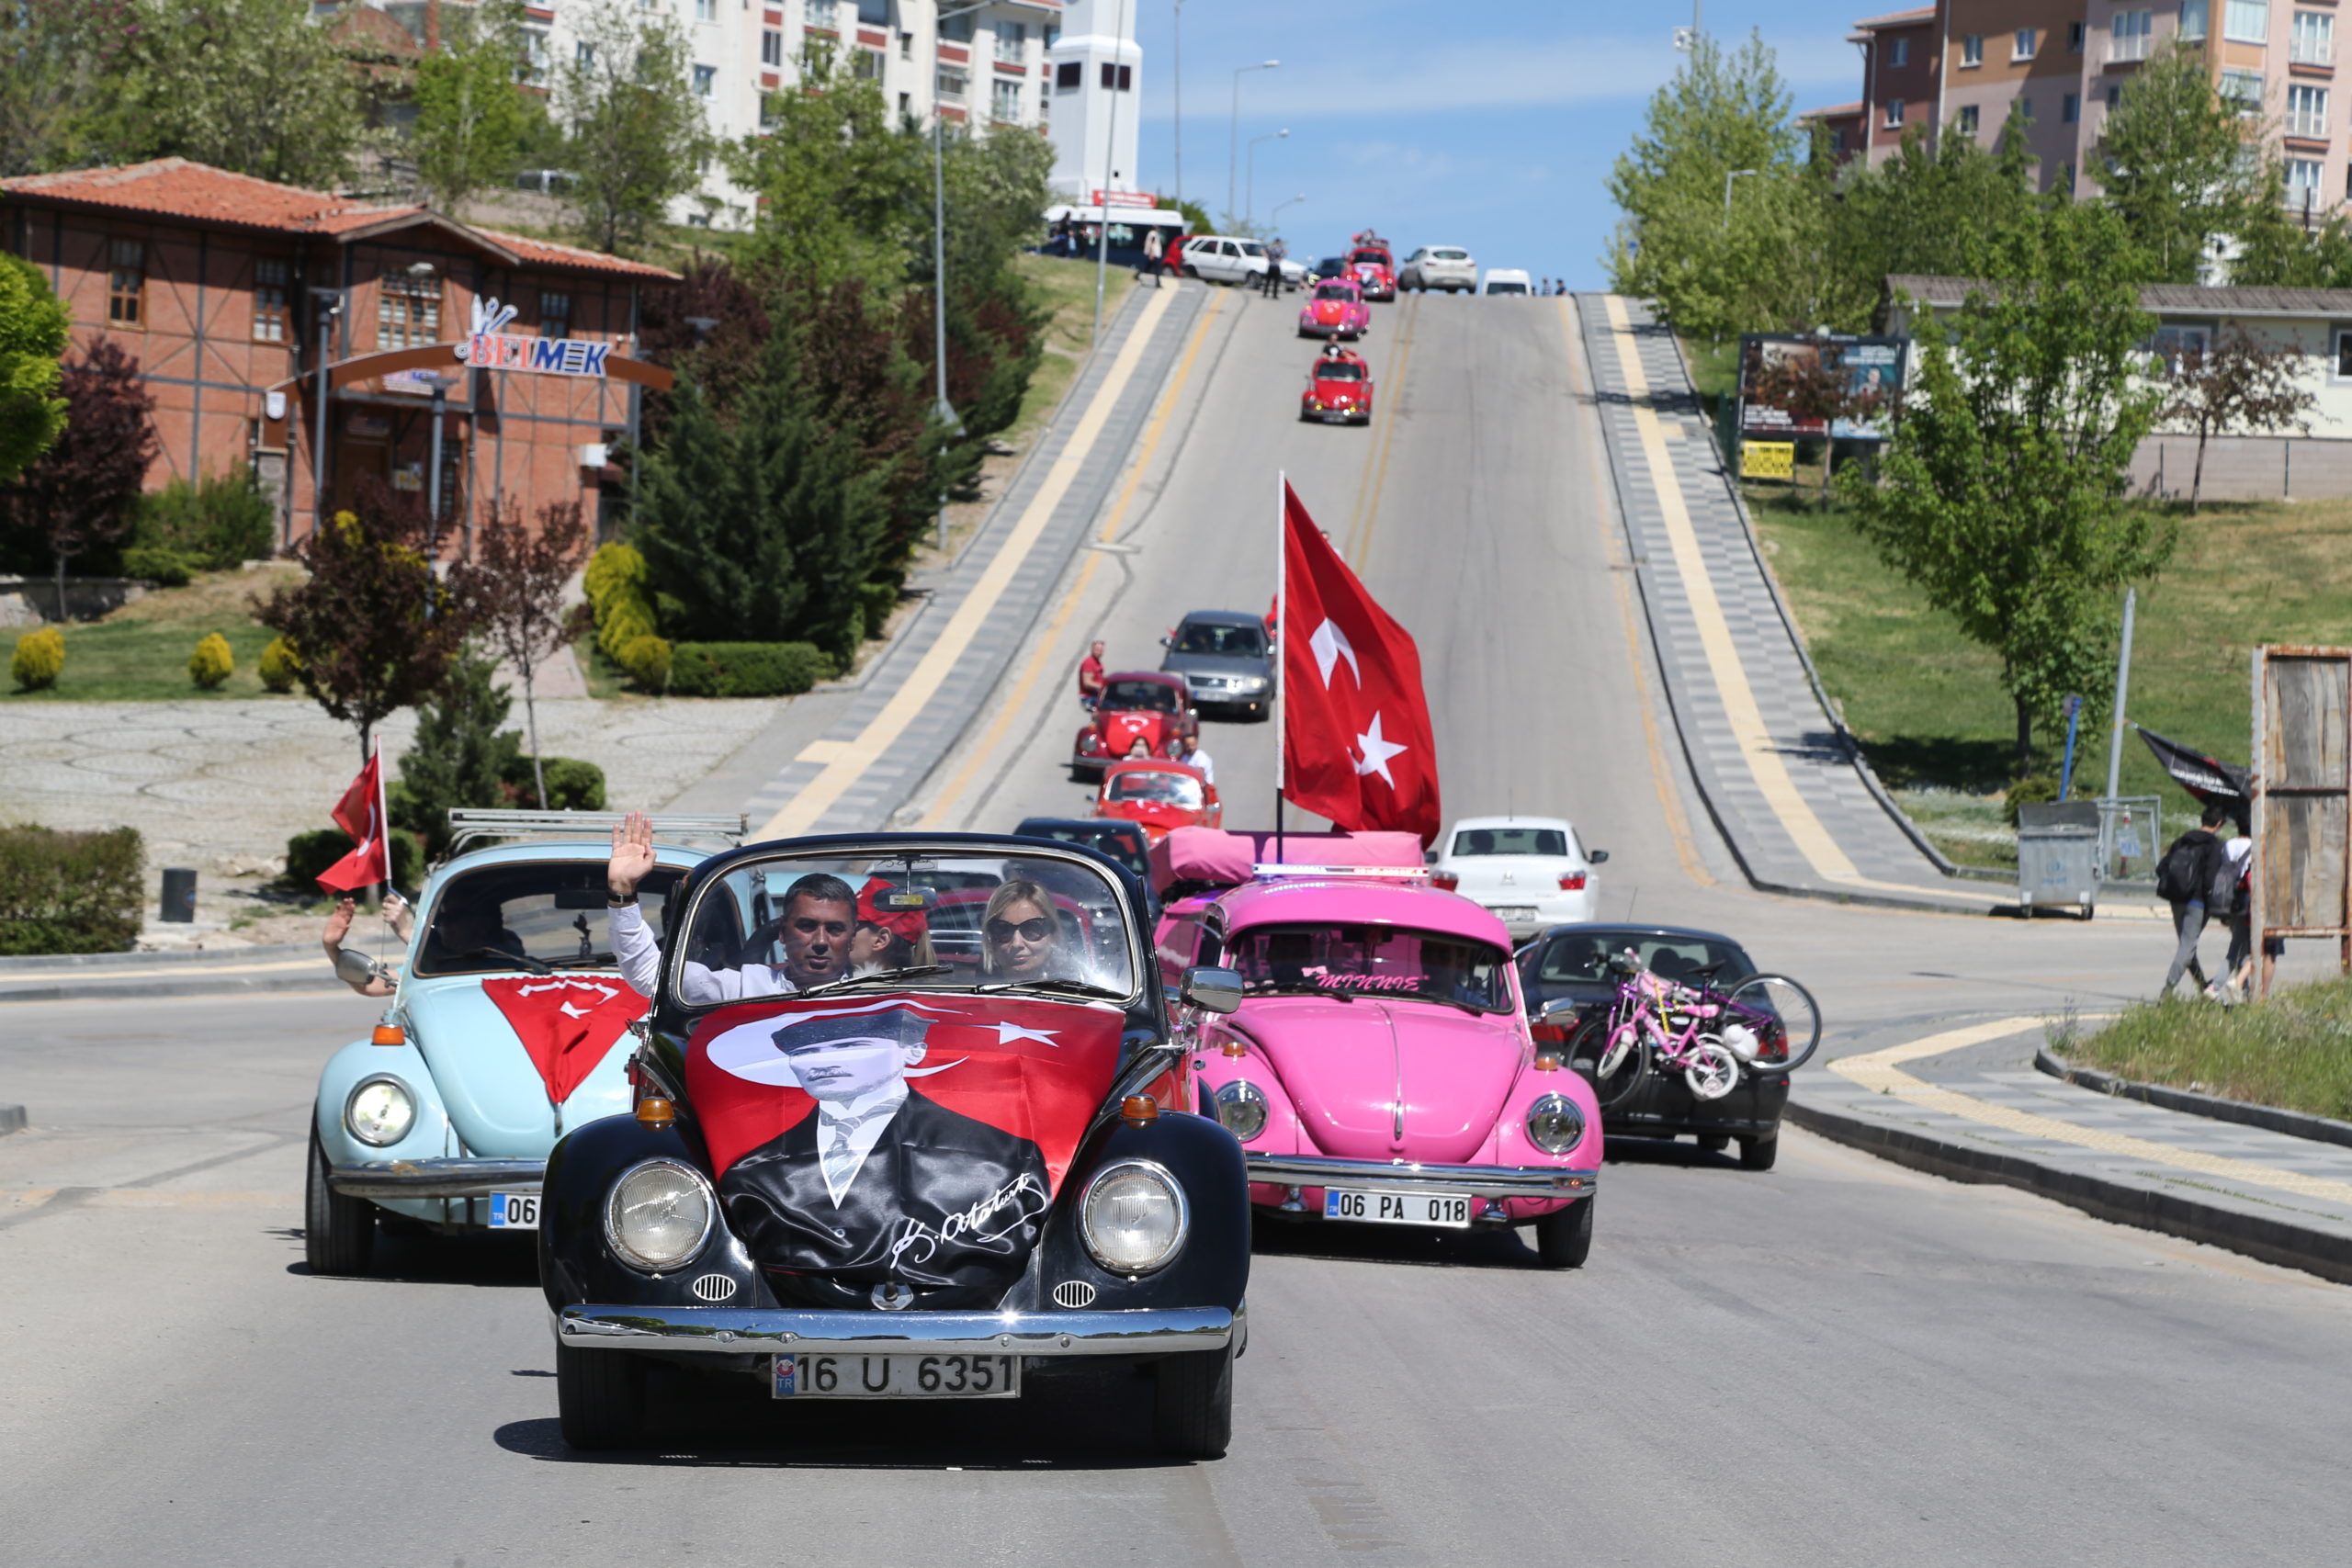  Gölbaşı’nda 19 Mayıs’a Özel 102 Klasik Arabayla Organizasyon Düzenlendi